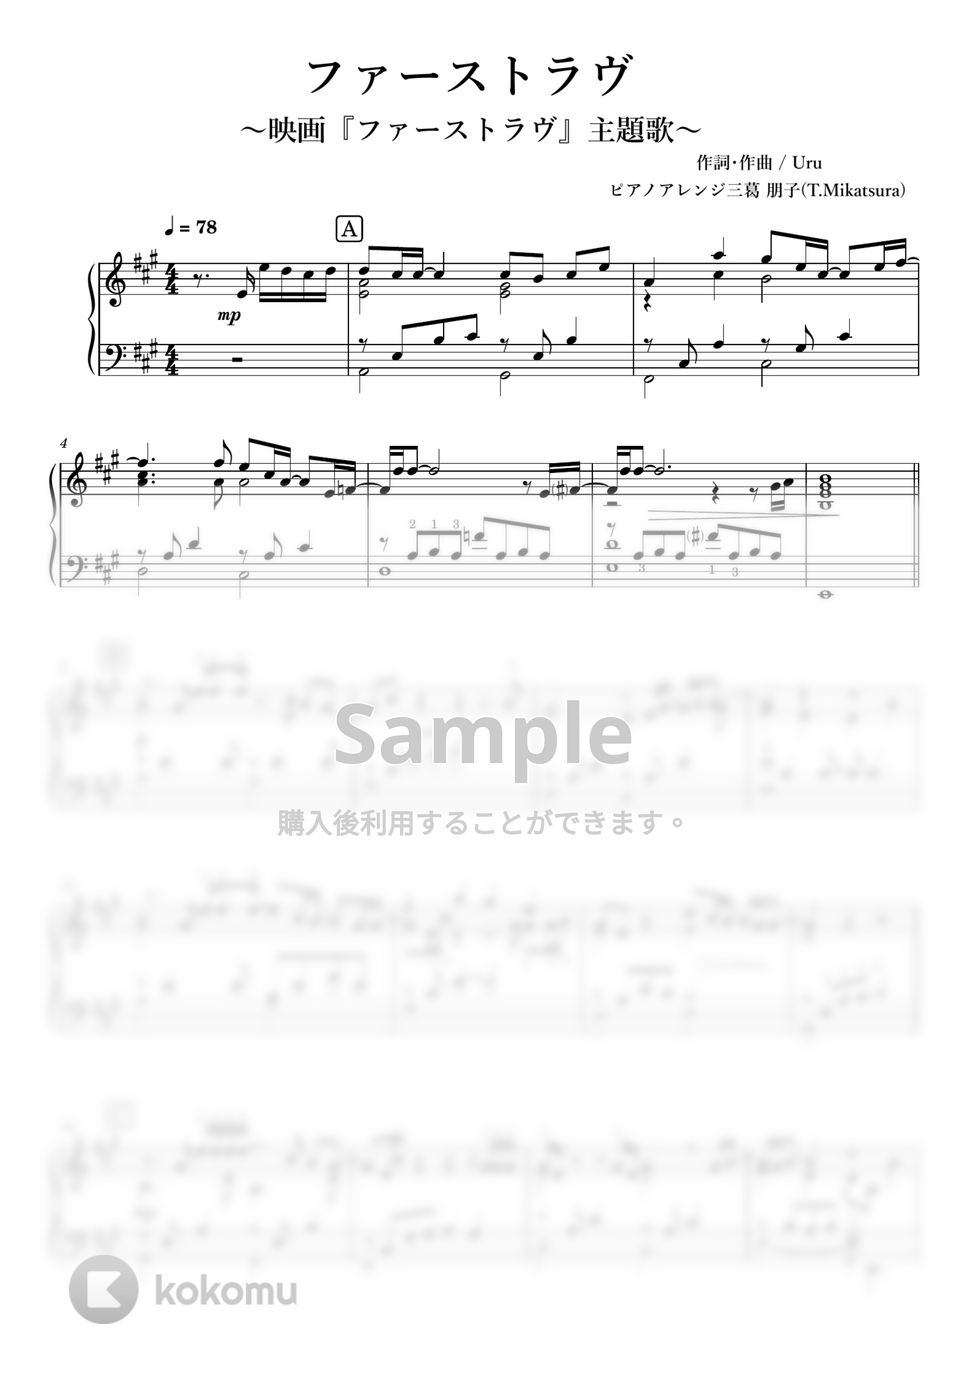 Uru - ファーストラヴ《ピアノソロ 上級》 (ピアノソロ上級 /ファーストラヴ主題歌/ 運指付き) by 三葛朋子(T.Mikatsura)